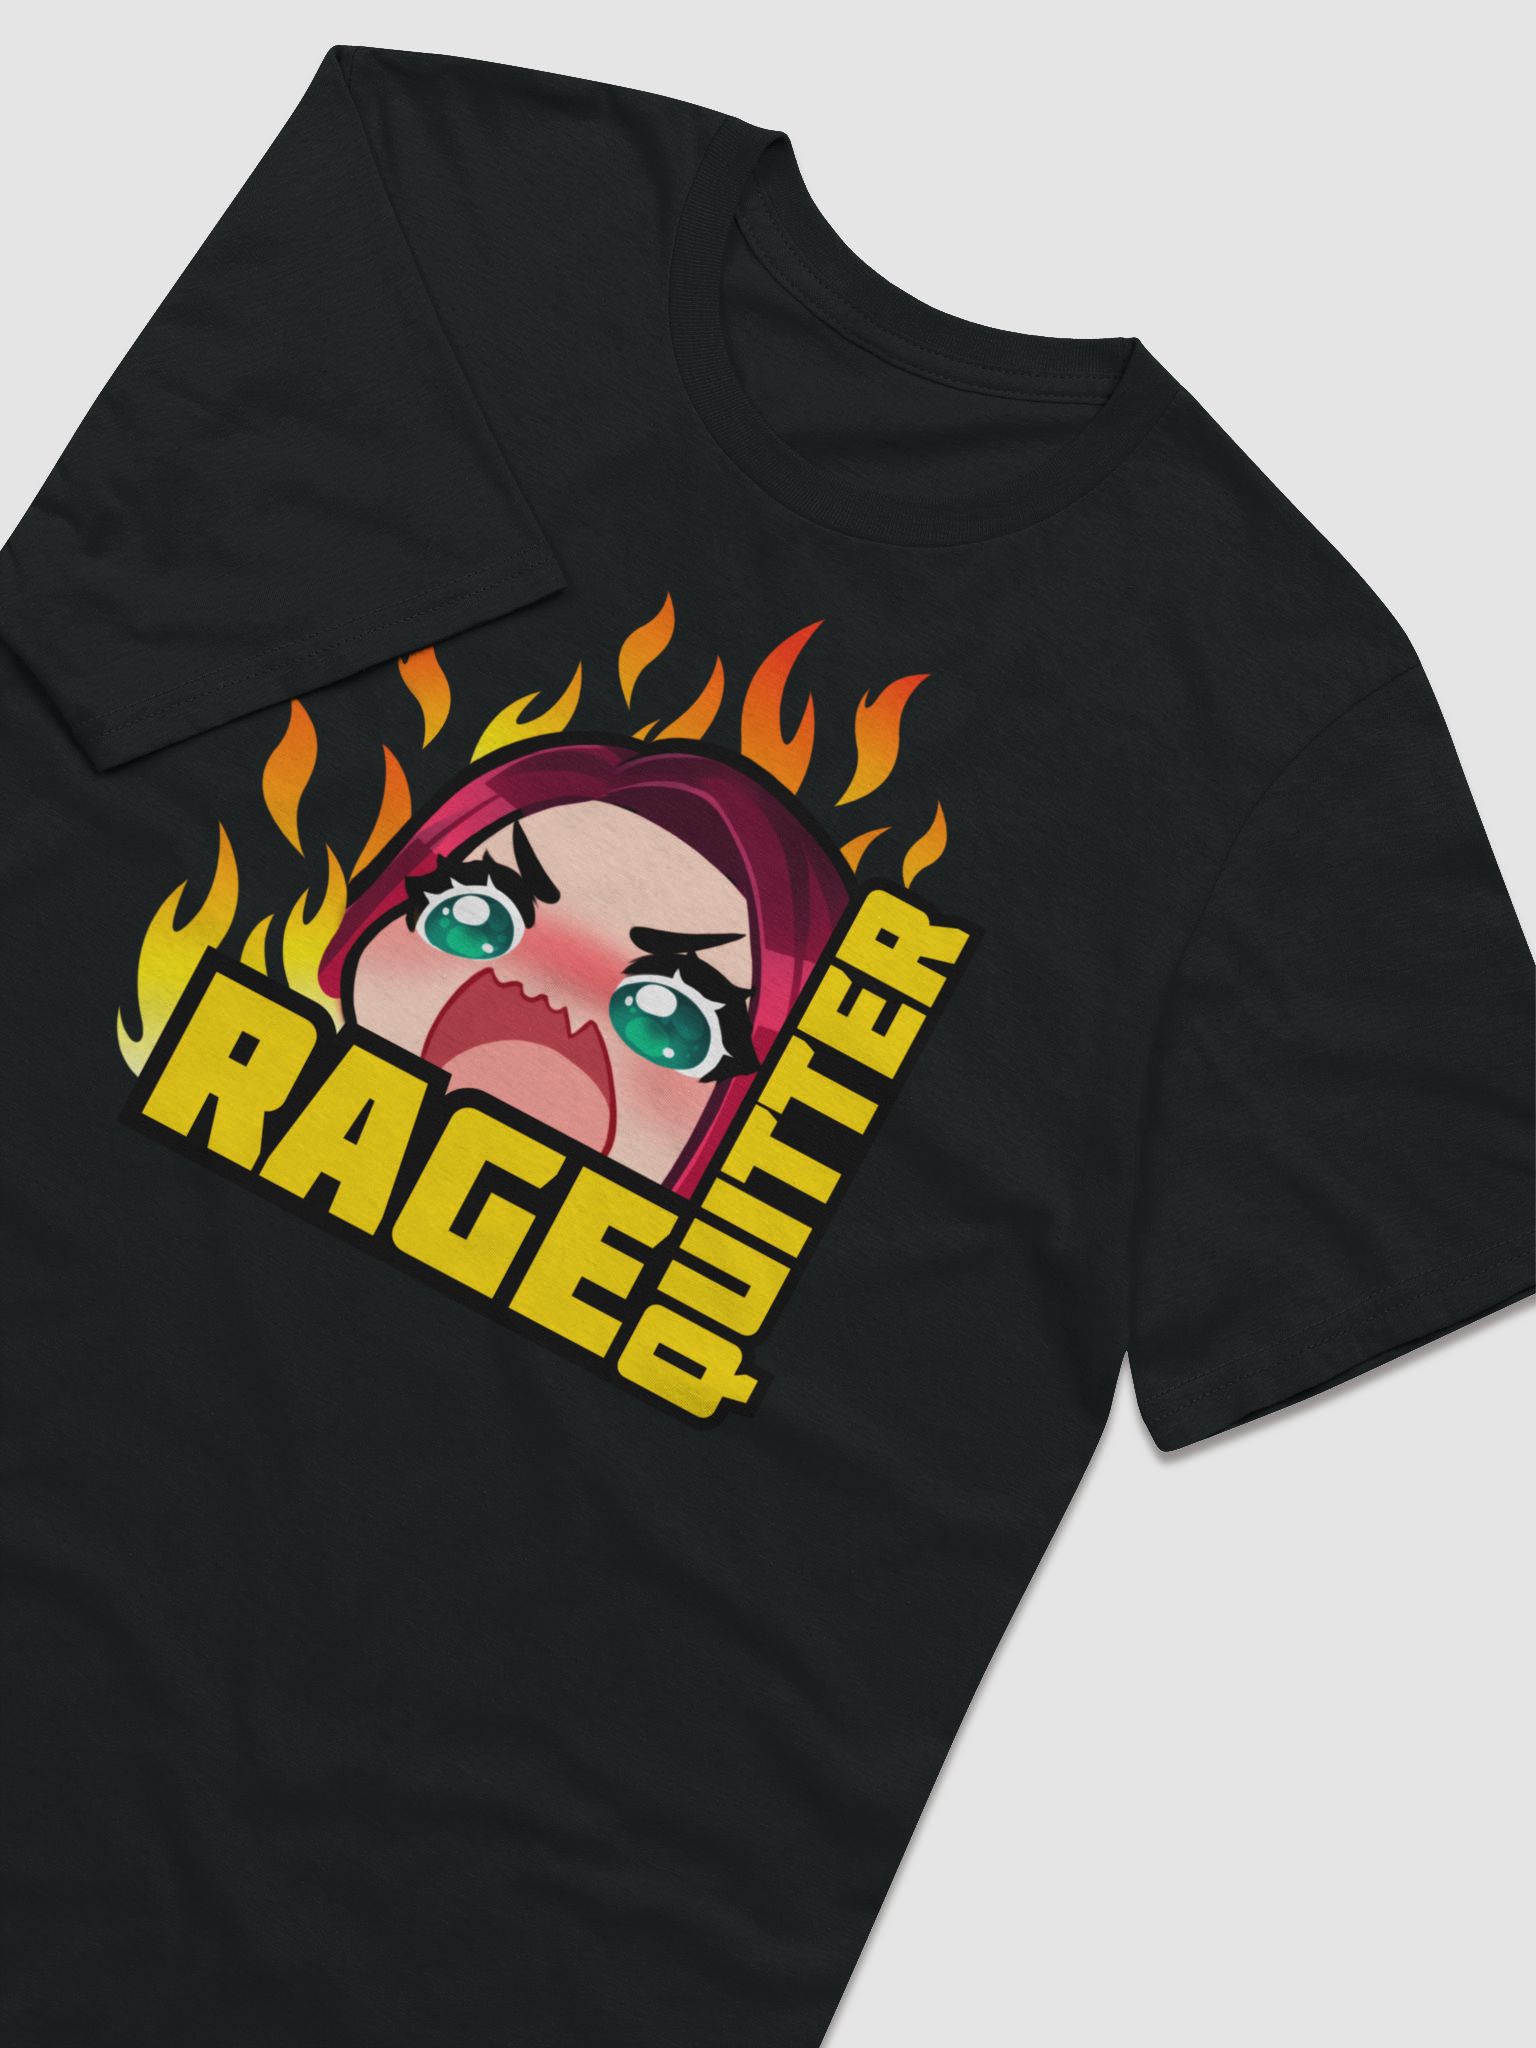 Rage Quit Tees – RageQuitTees